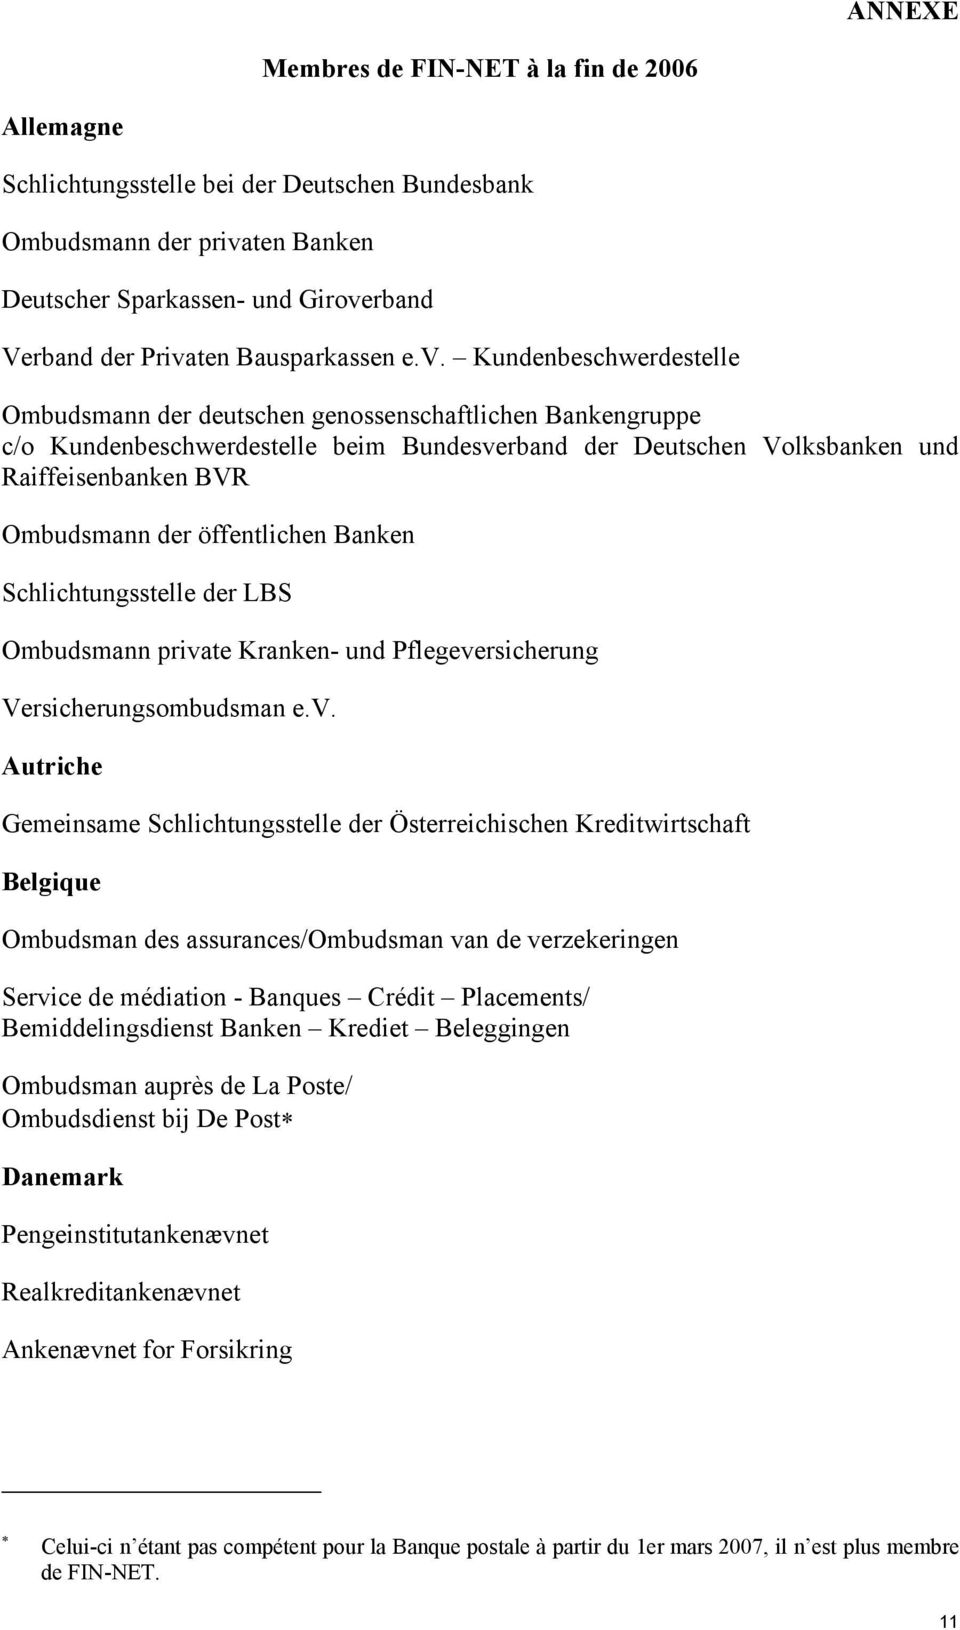 Kundenbeschwerdestelle Ombudsmann der deutschen genossenschaftlichen Bankengruppe c/o Kundenbeschwerdestelle beim Bundesverband der Deutschen Volksbanken und Raiffeisenbanken BVR Ombudsmann der